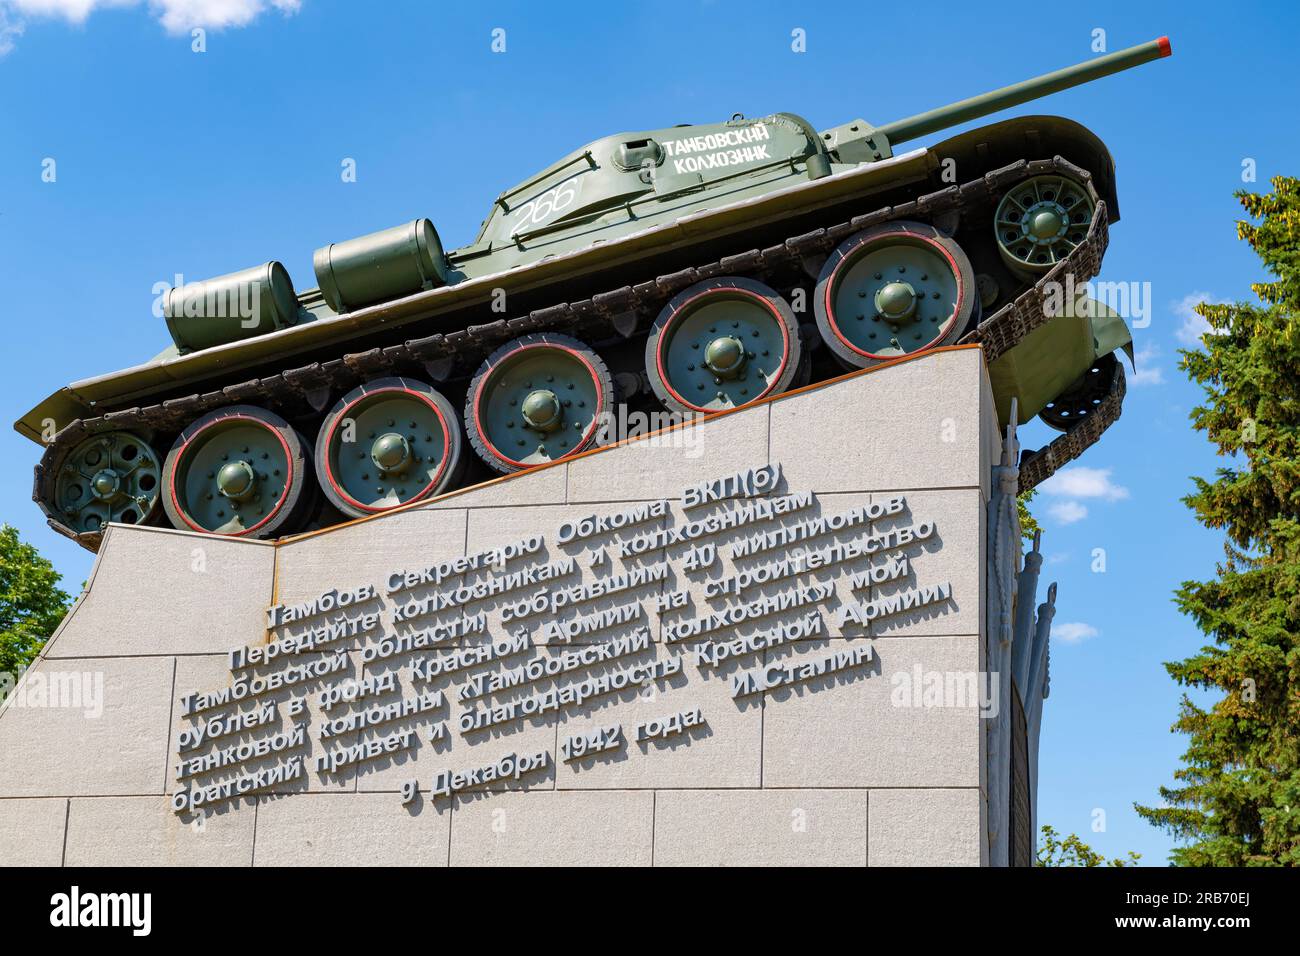 TAMBOV, RUSSIA - JUNE 03, 2023: Monument "Tank T-34 "Tambov Collective Farmer" close-up on a sunny June day Stock Photo